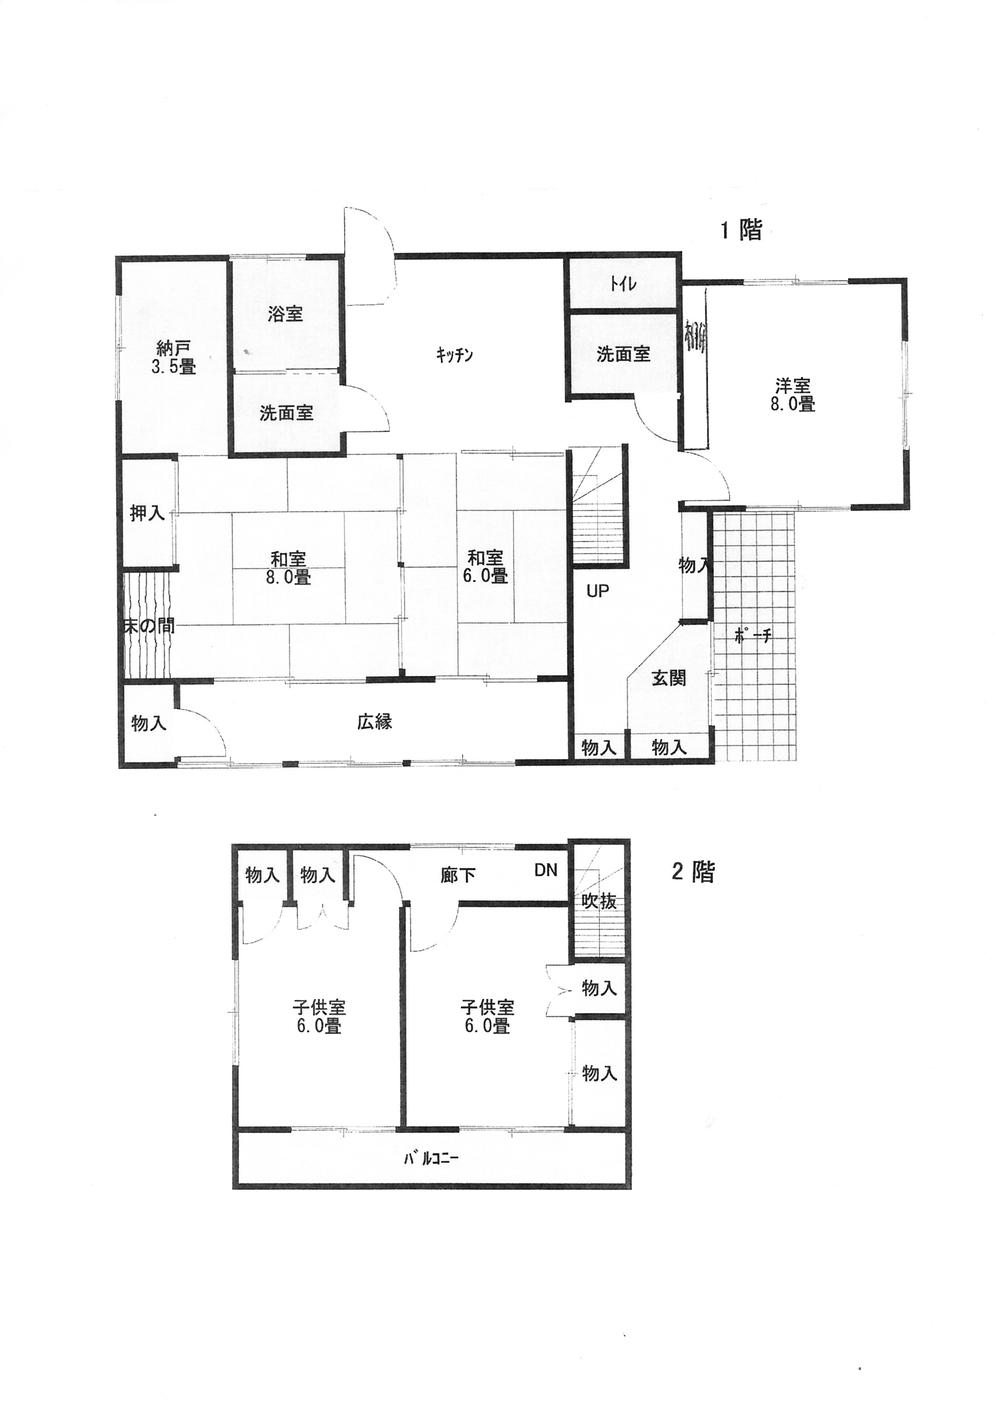 Floor plan. 19,800,000 yen, 5DK + S (storeroom), Land area 558 sq m , Building area 118.55 sq m